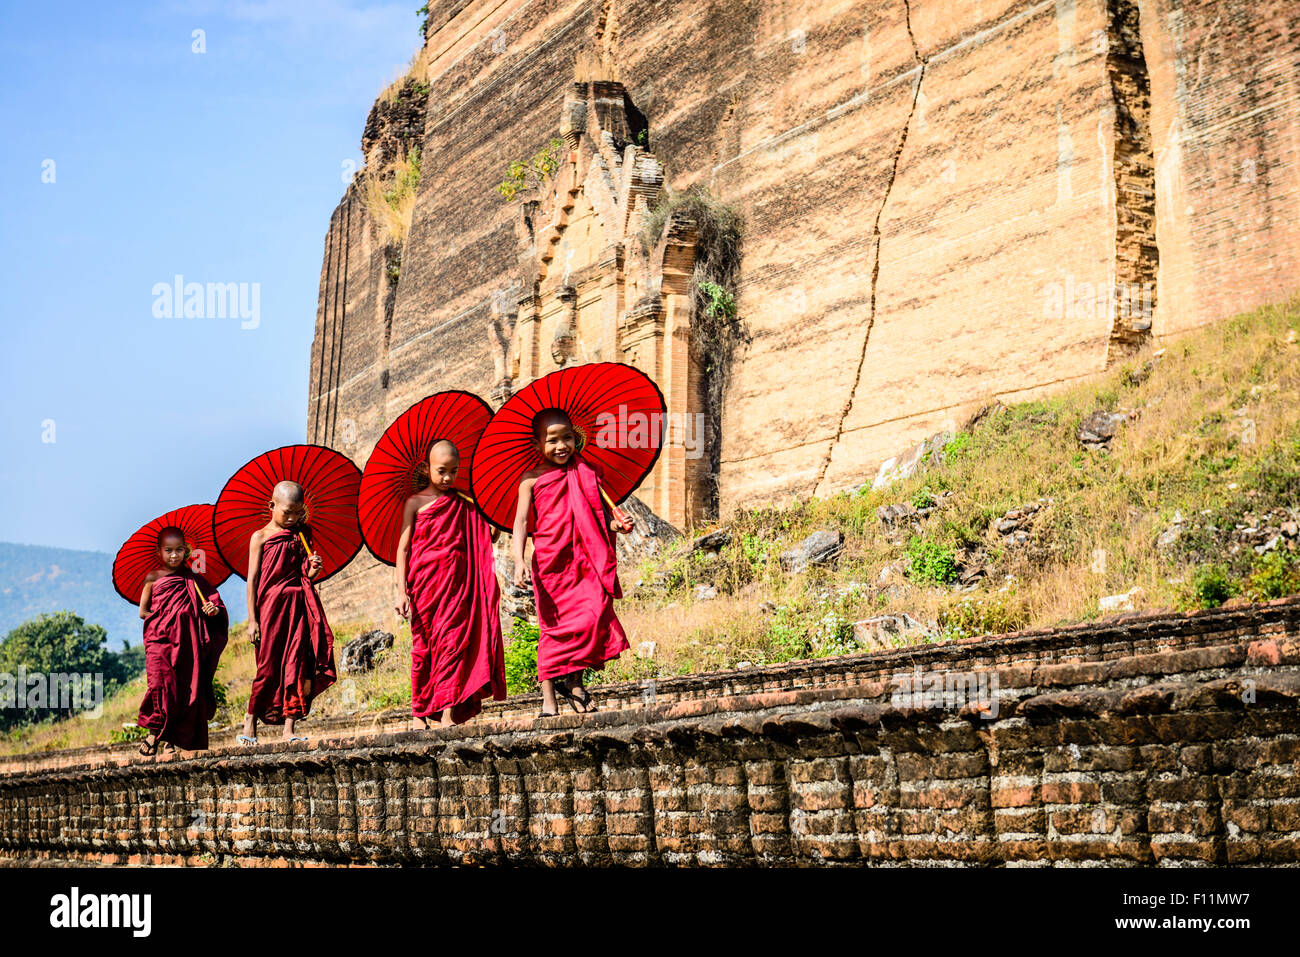 Les enfants asiatiques avec des parasols en équilibre sur mur de pierre Banque D'Images